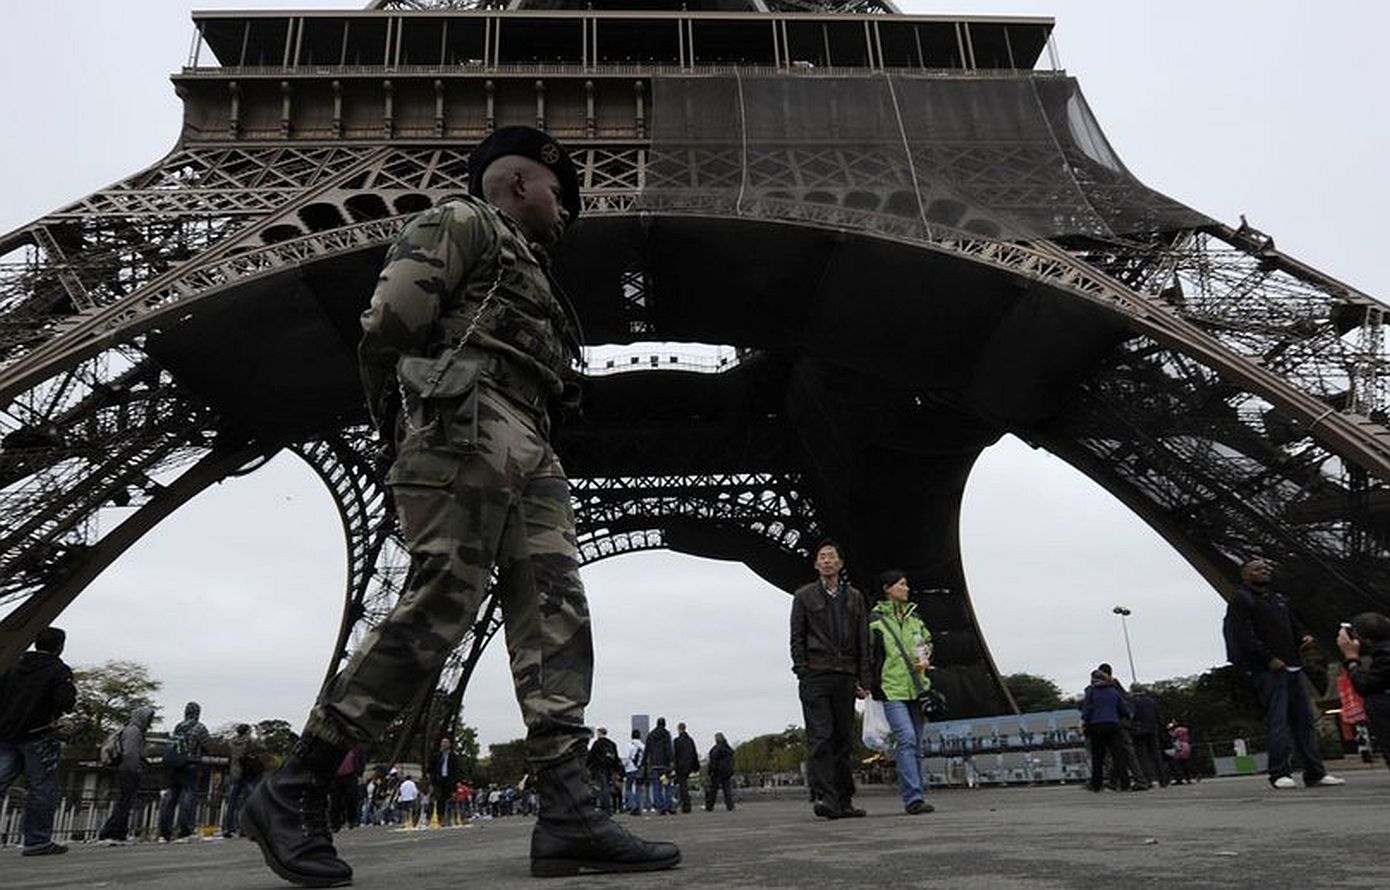 Σε αυξημένη επιφυλακή η Ευρώπη μετά την τρομοκρατική επίθεση στη Μόσχα &#8211; Στο ύψιστο επίπεδο συναγερμού η Γαλλία